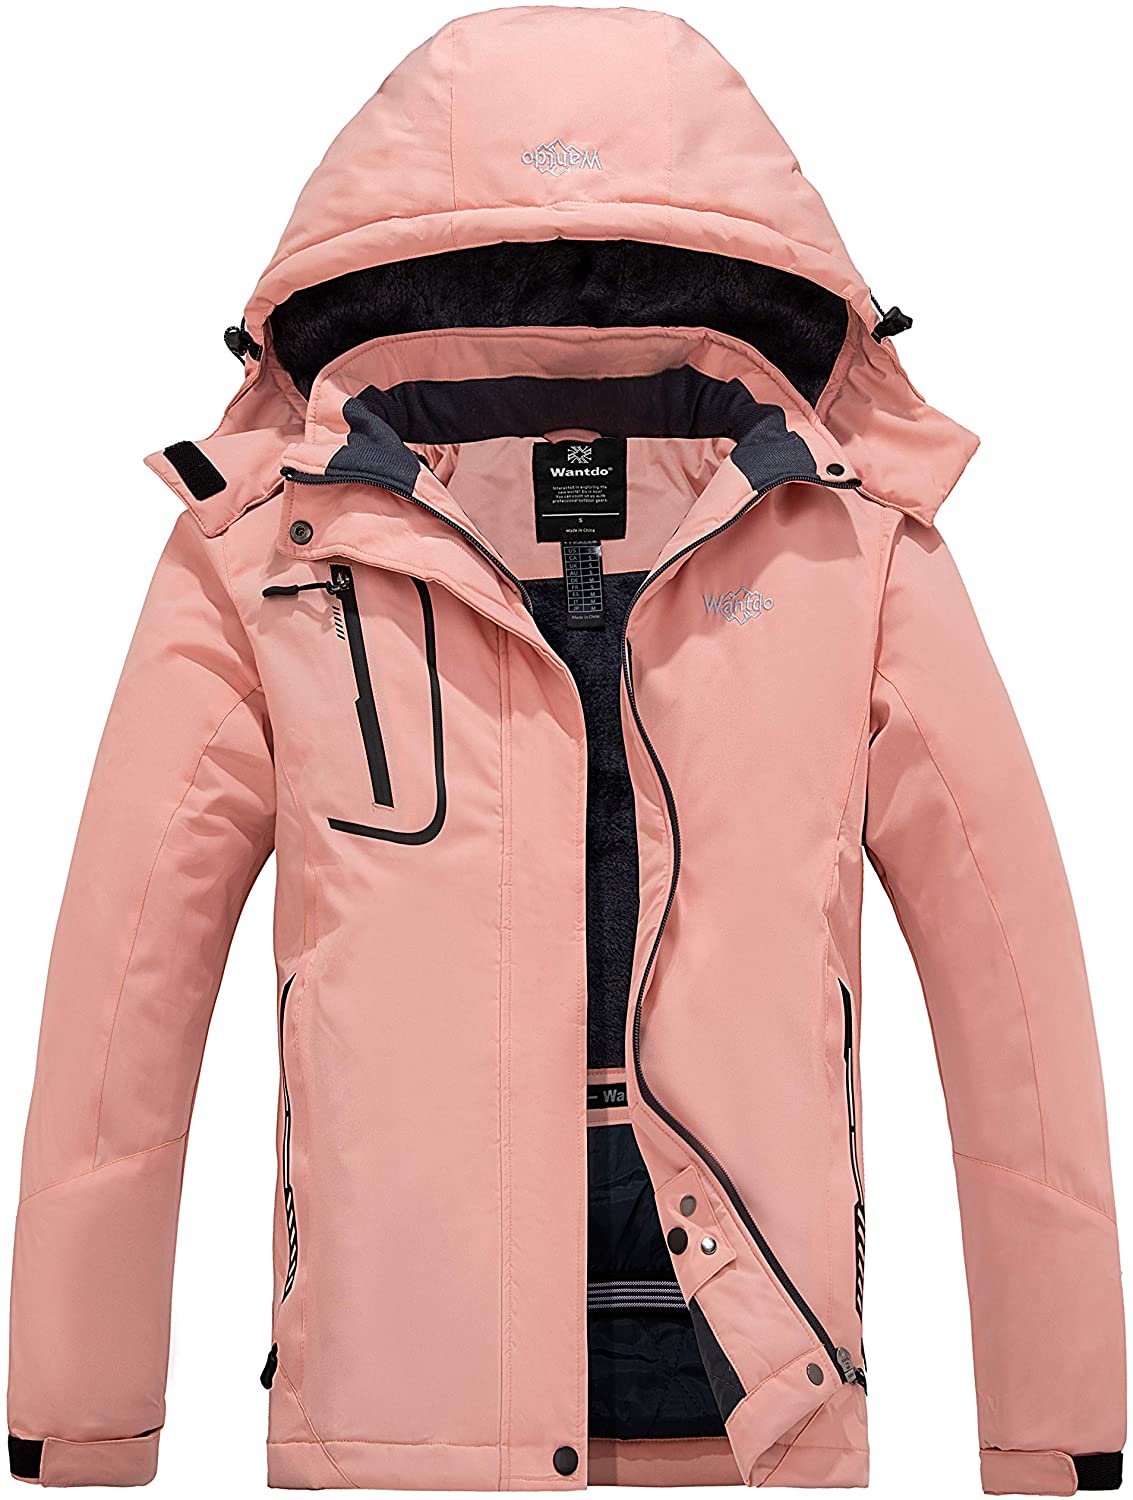 Wantdo Women's Mountain Waterproof Ski Jacket Windproof Rain Jacket Winter Warm Hooded Coat 